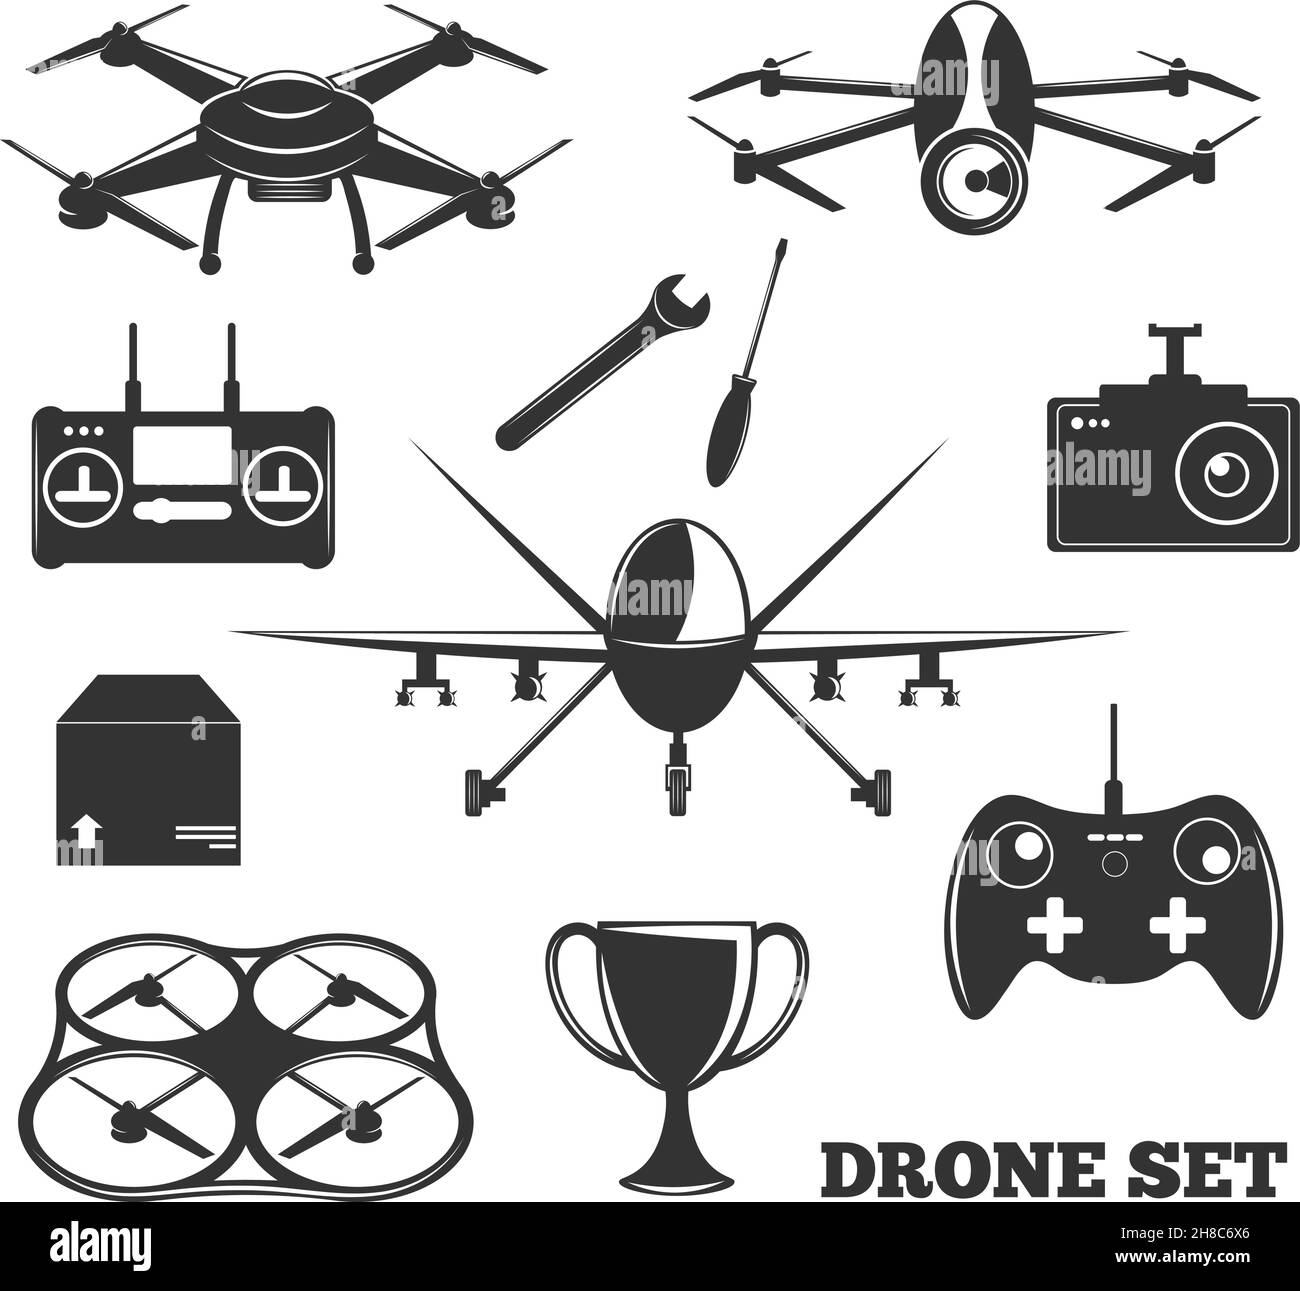 Jeu monochrome d'éléments de drone avec contrôleur, caméra photo, outils de réparation, paquet, illustration vectorielle isolée par trophée Illustration de Vecteur